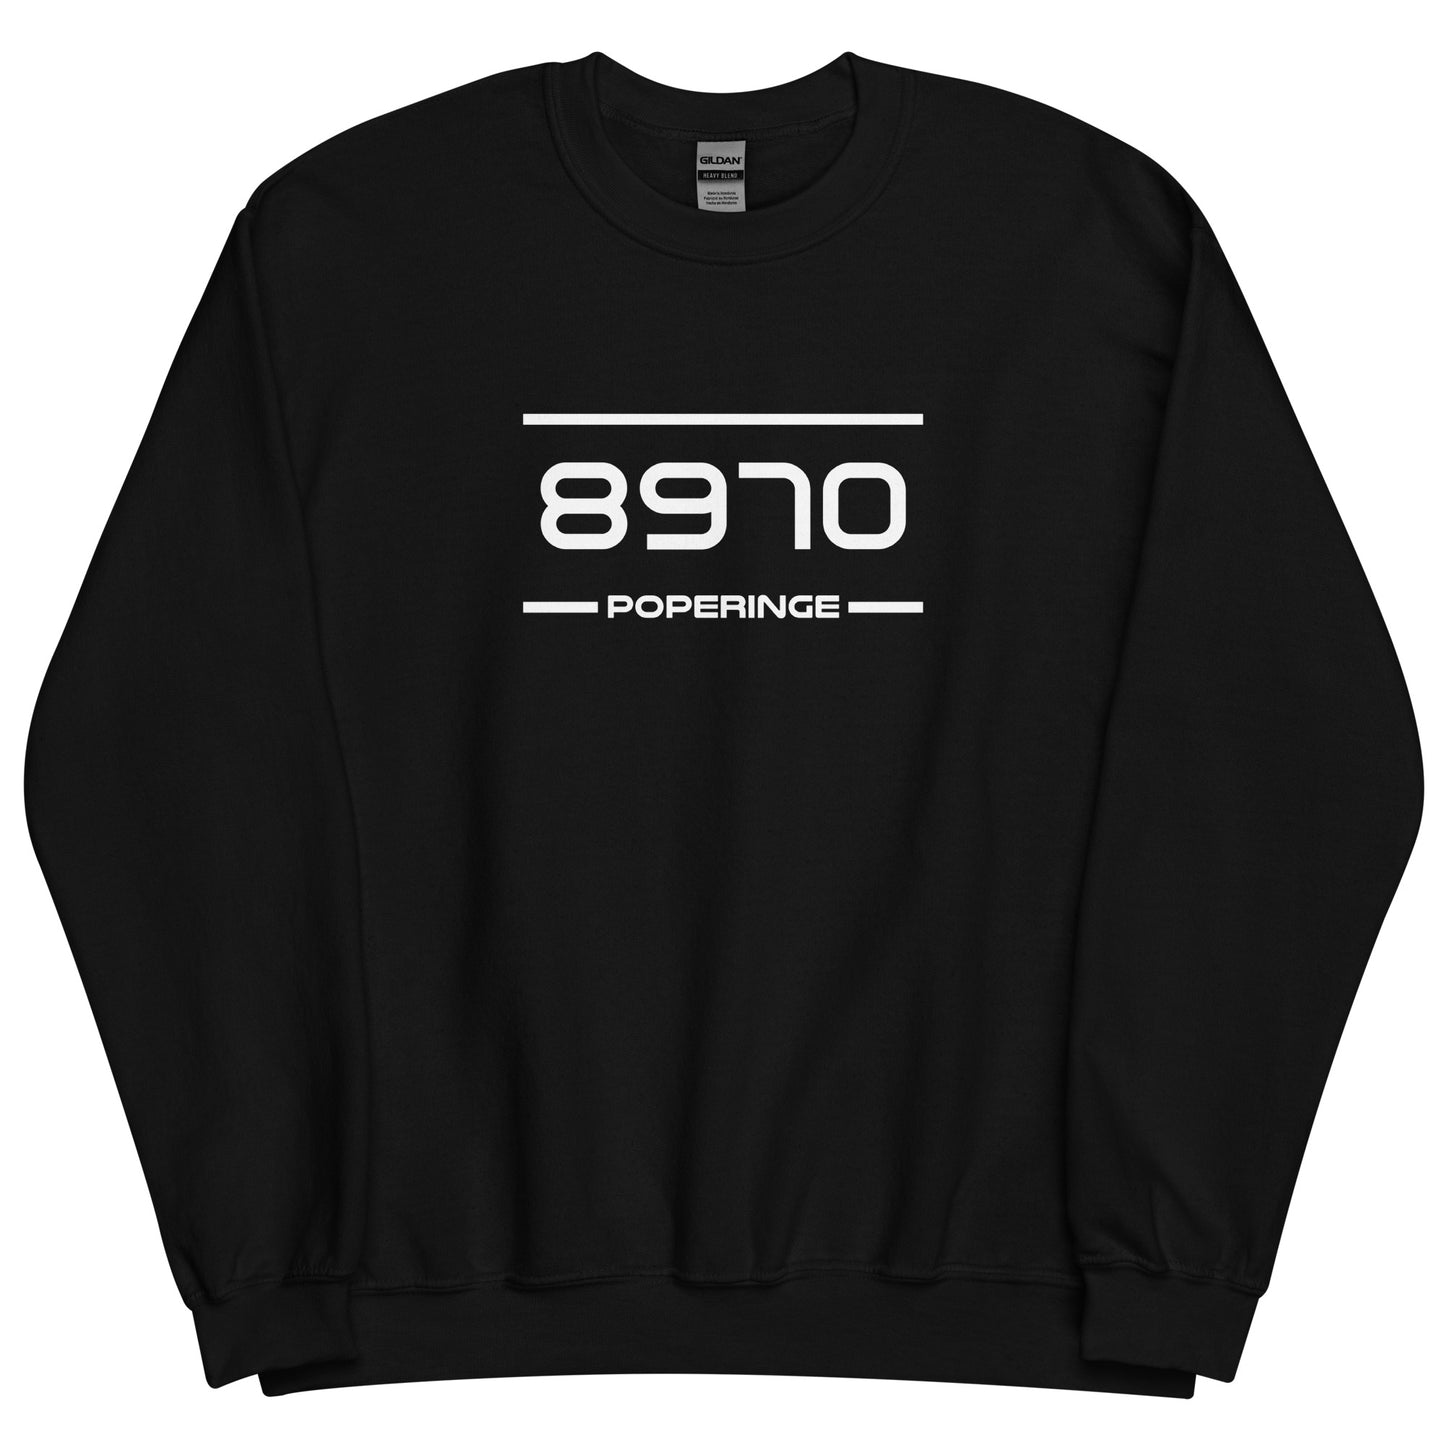 Sweater - 8970 - Poperinge (M/V)